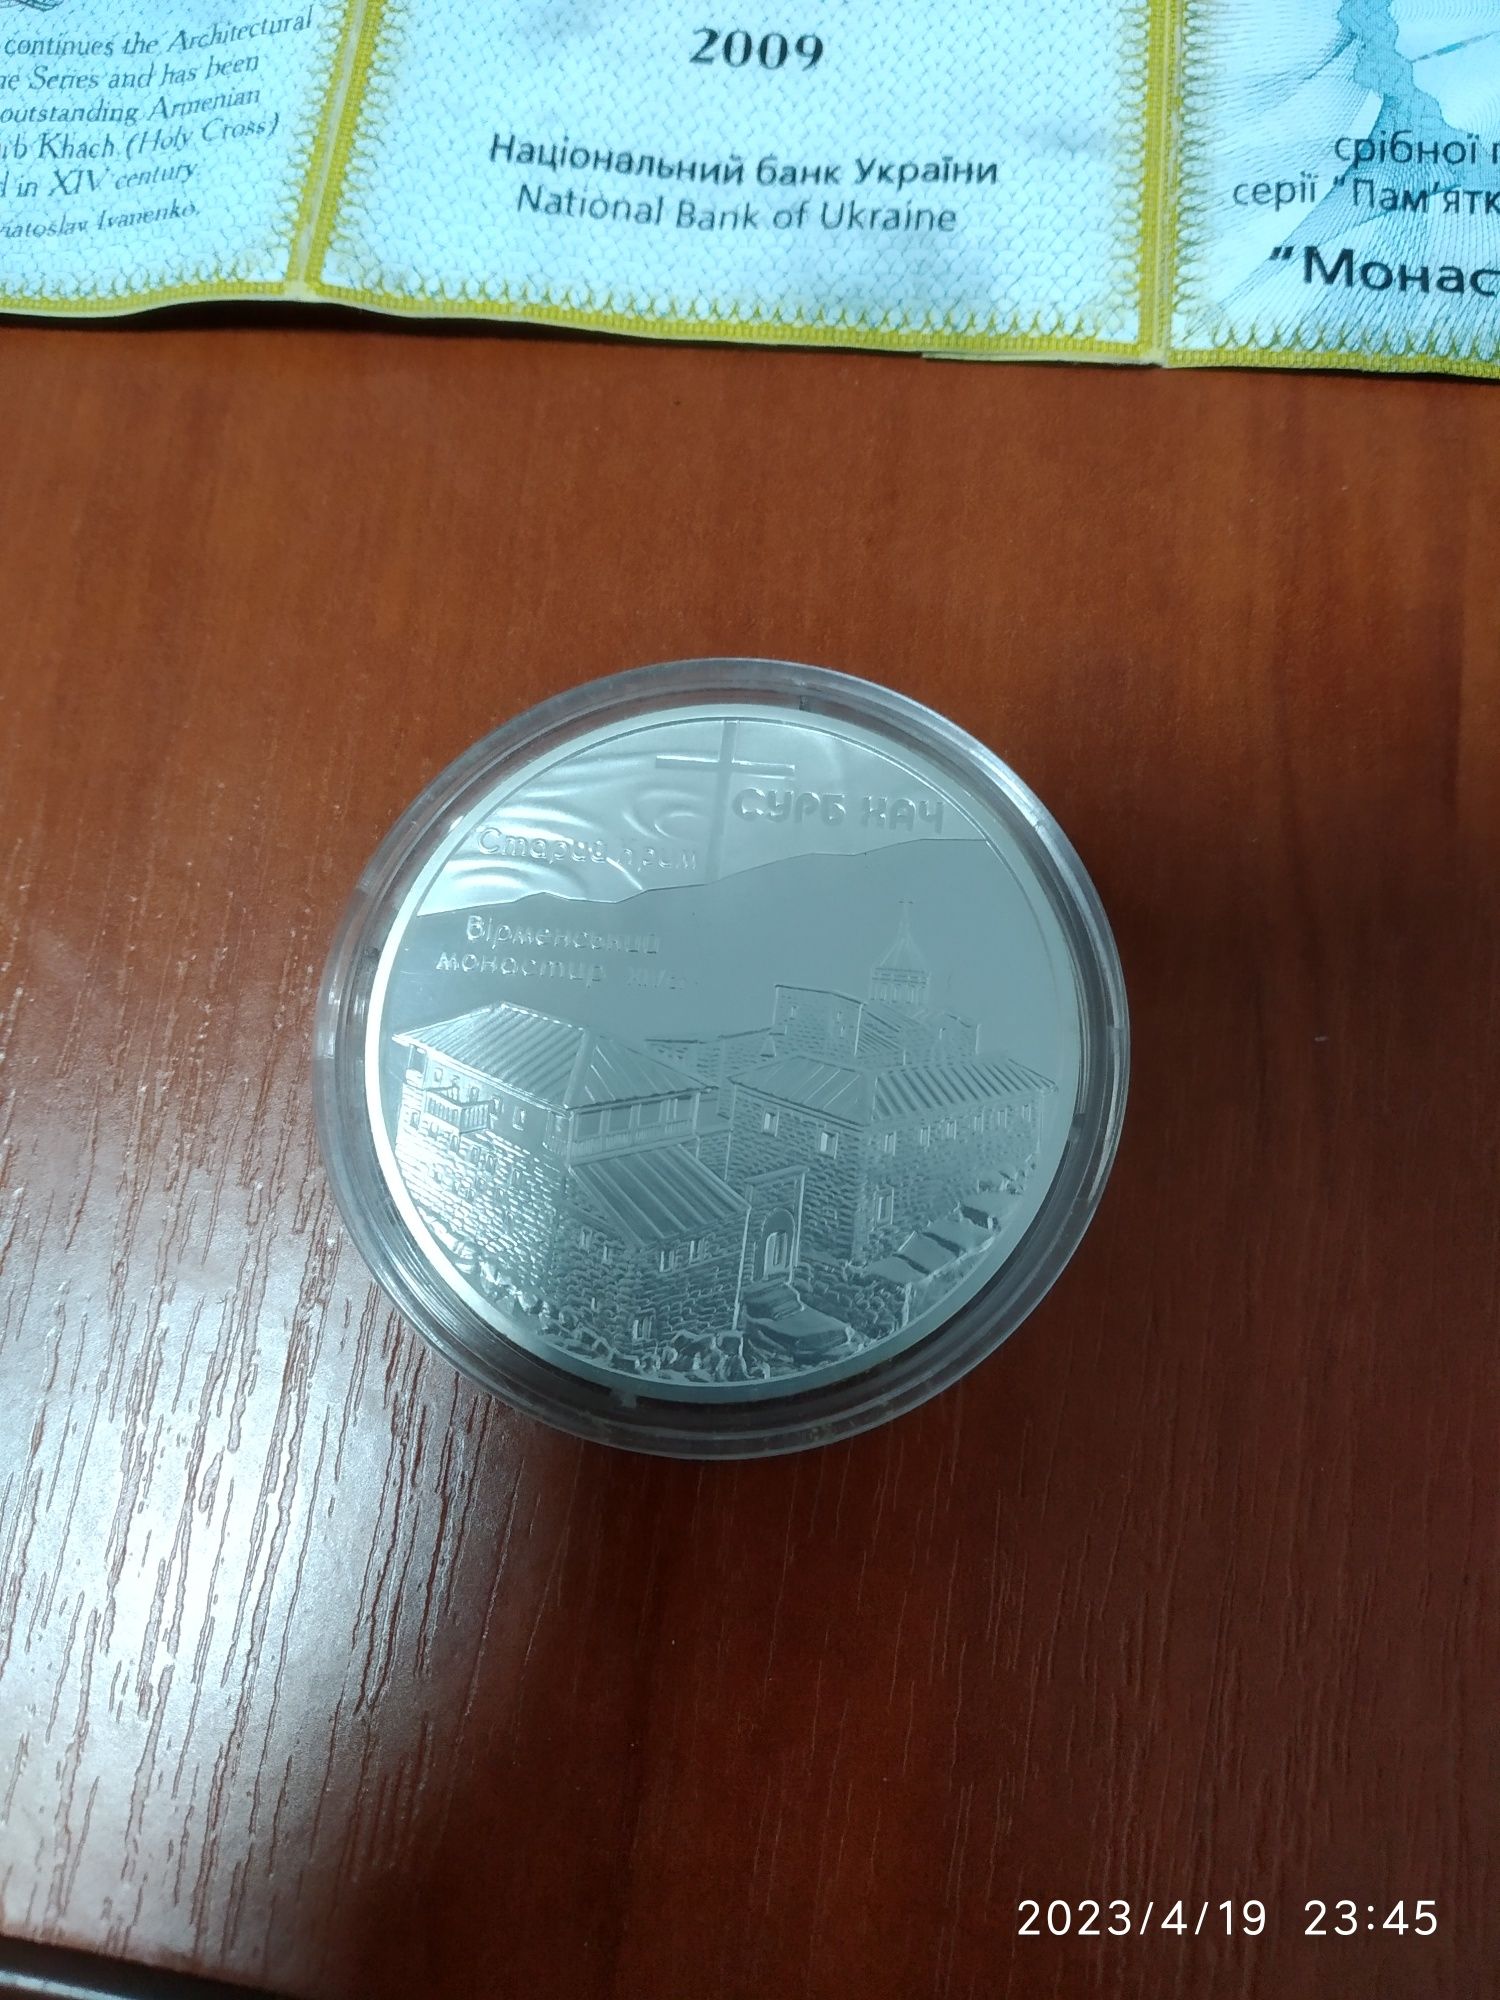 Монета серебро номиналом 10 грн 2009 р.